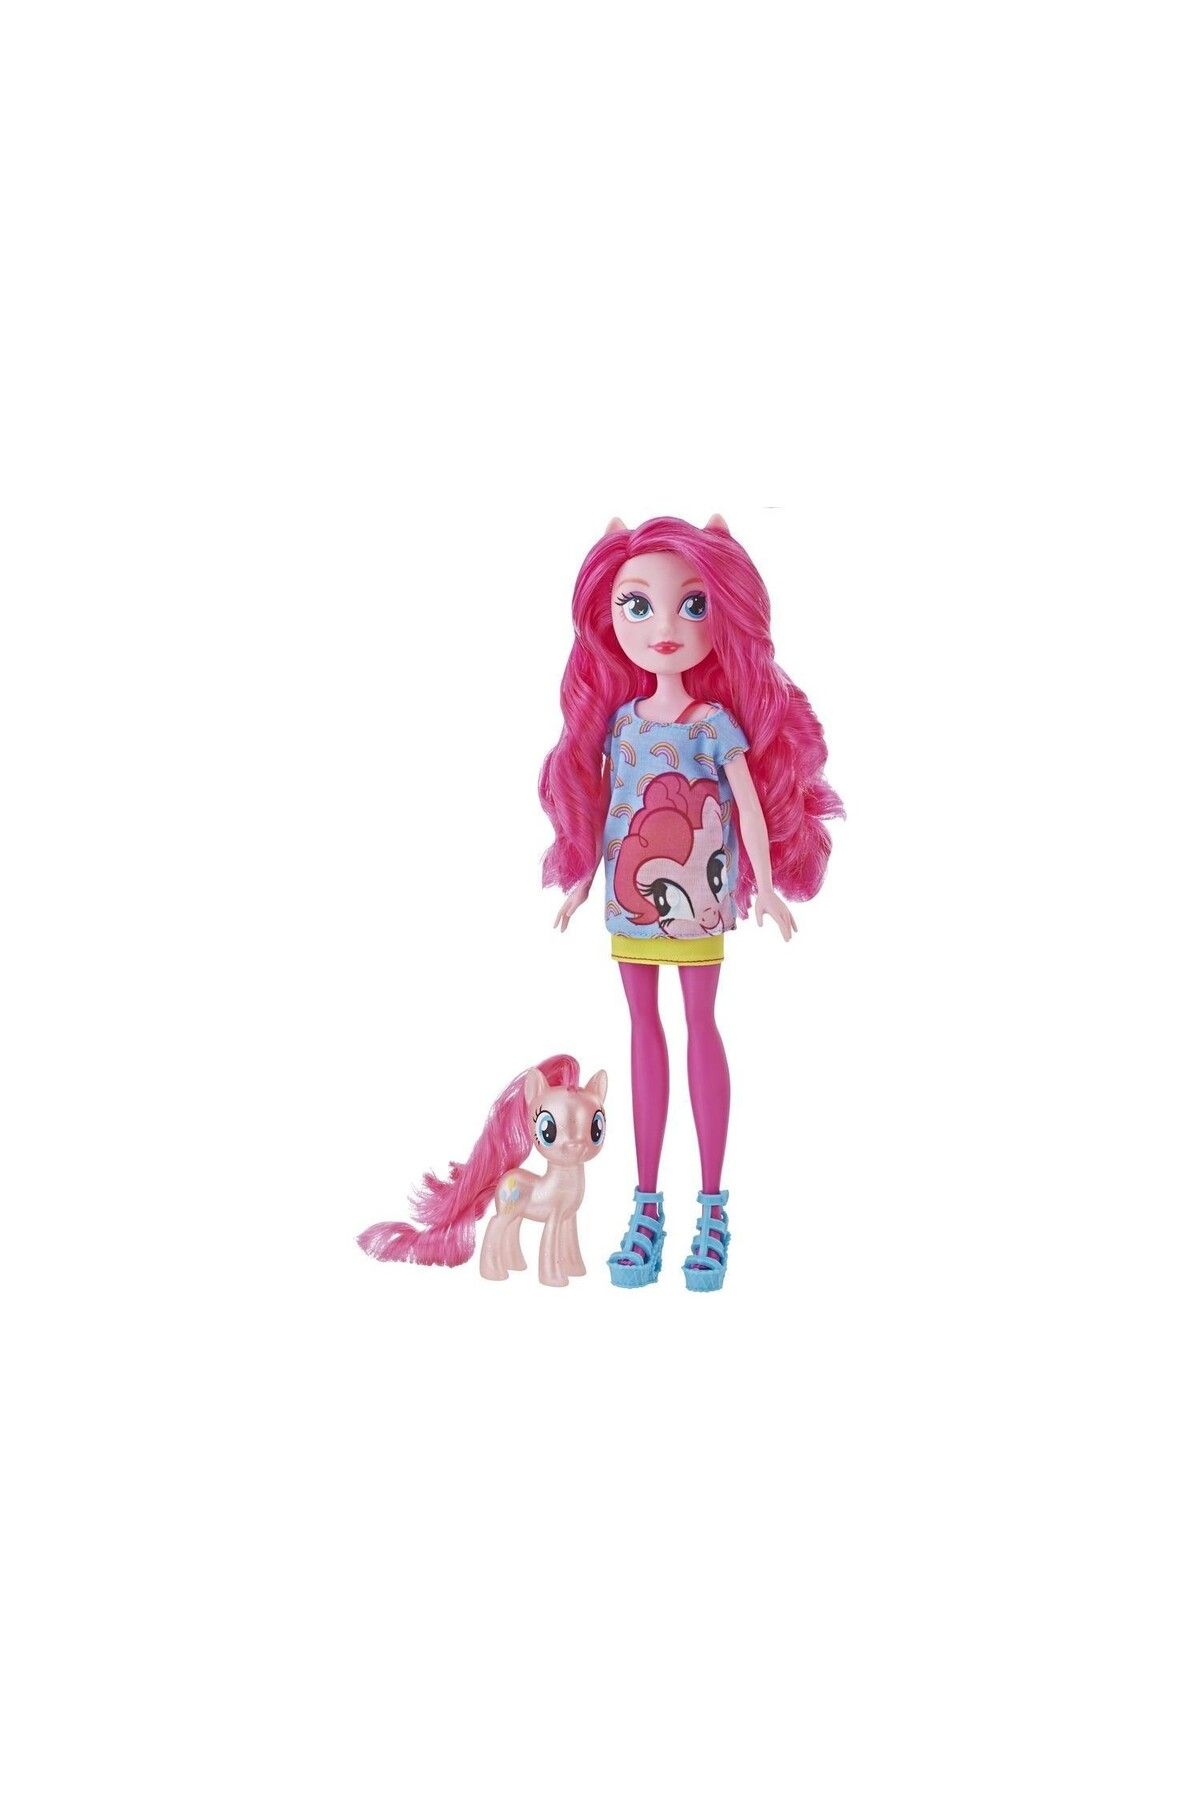 sommeow Hasbro sommeow sommeow Equestria Girls Ve Pony Pinkie Pie E5657 - E5659